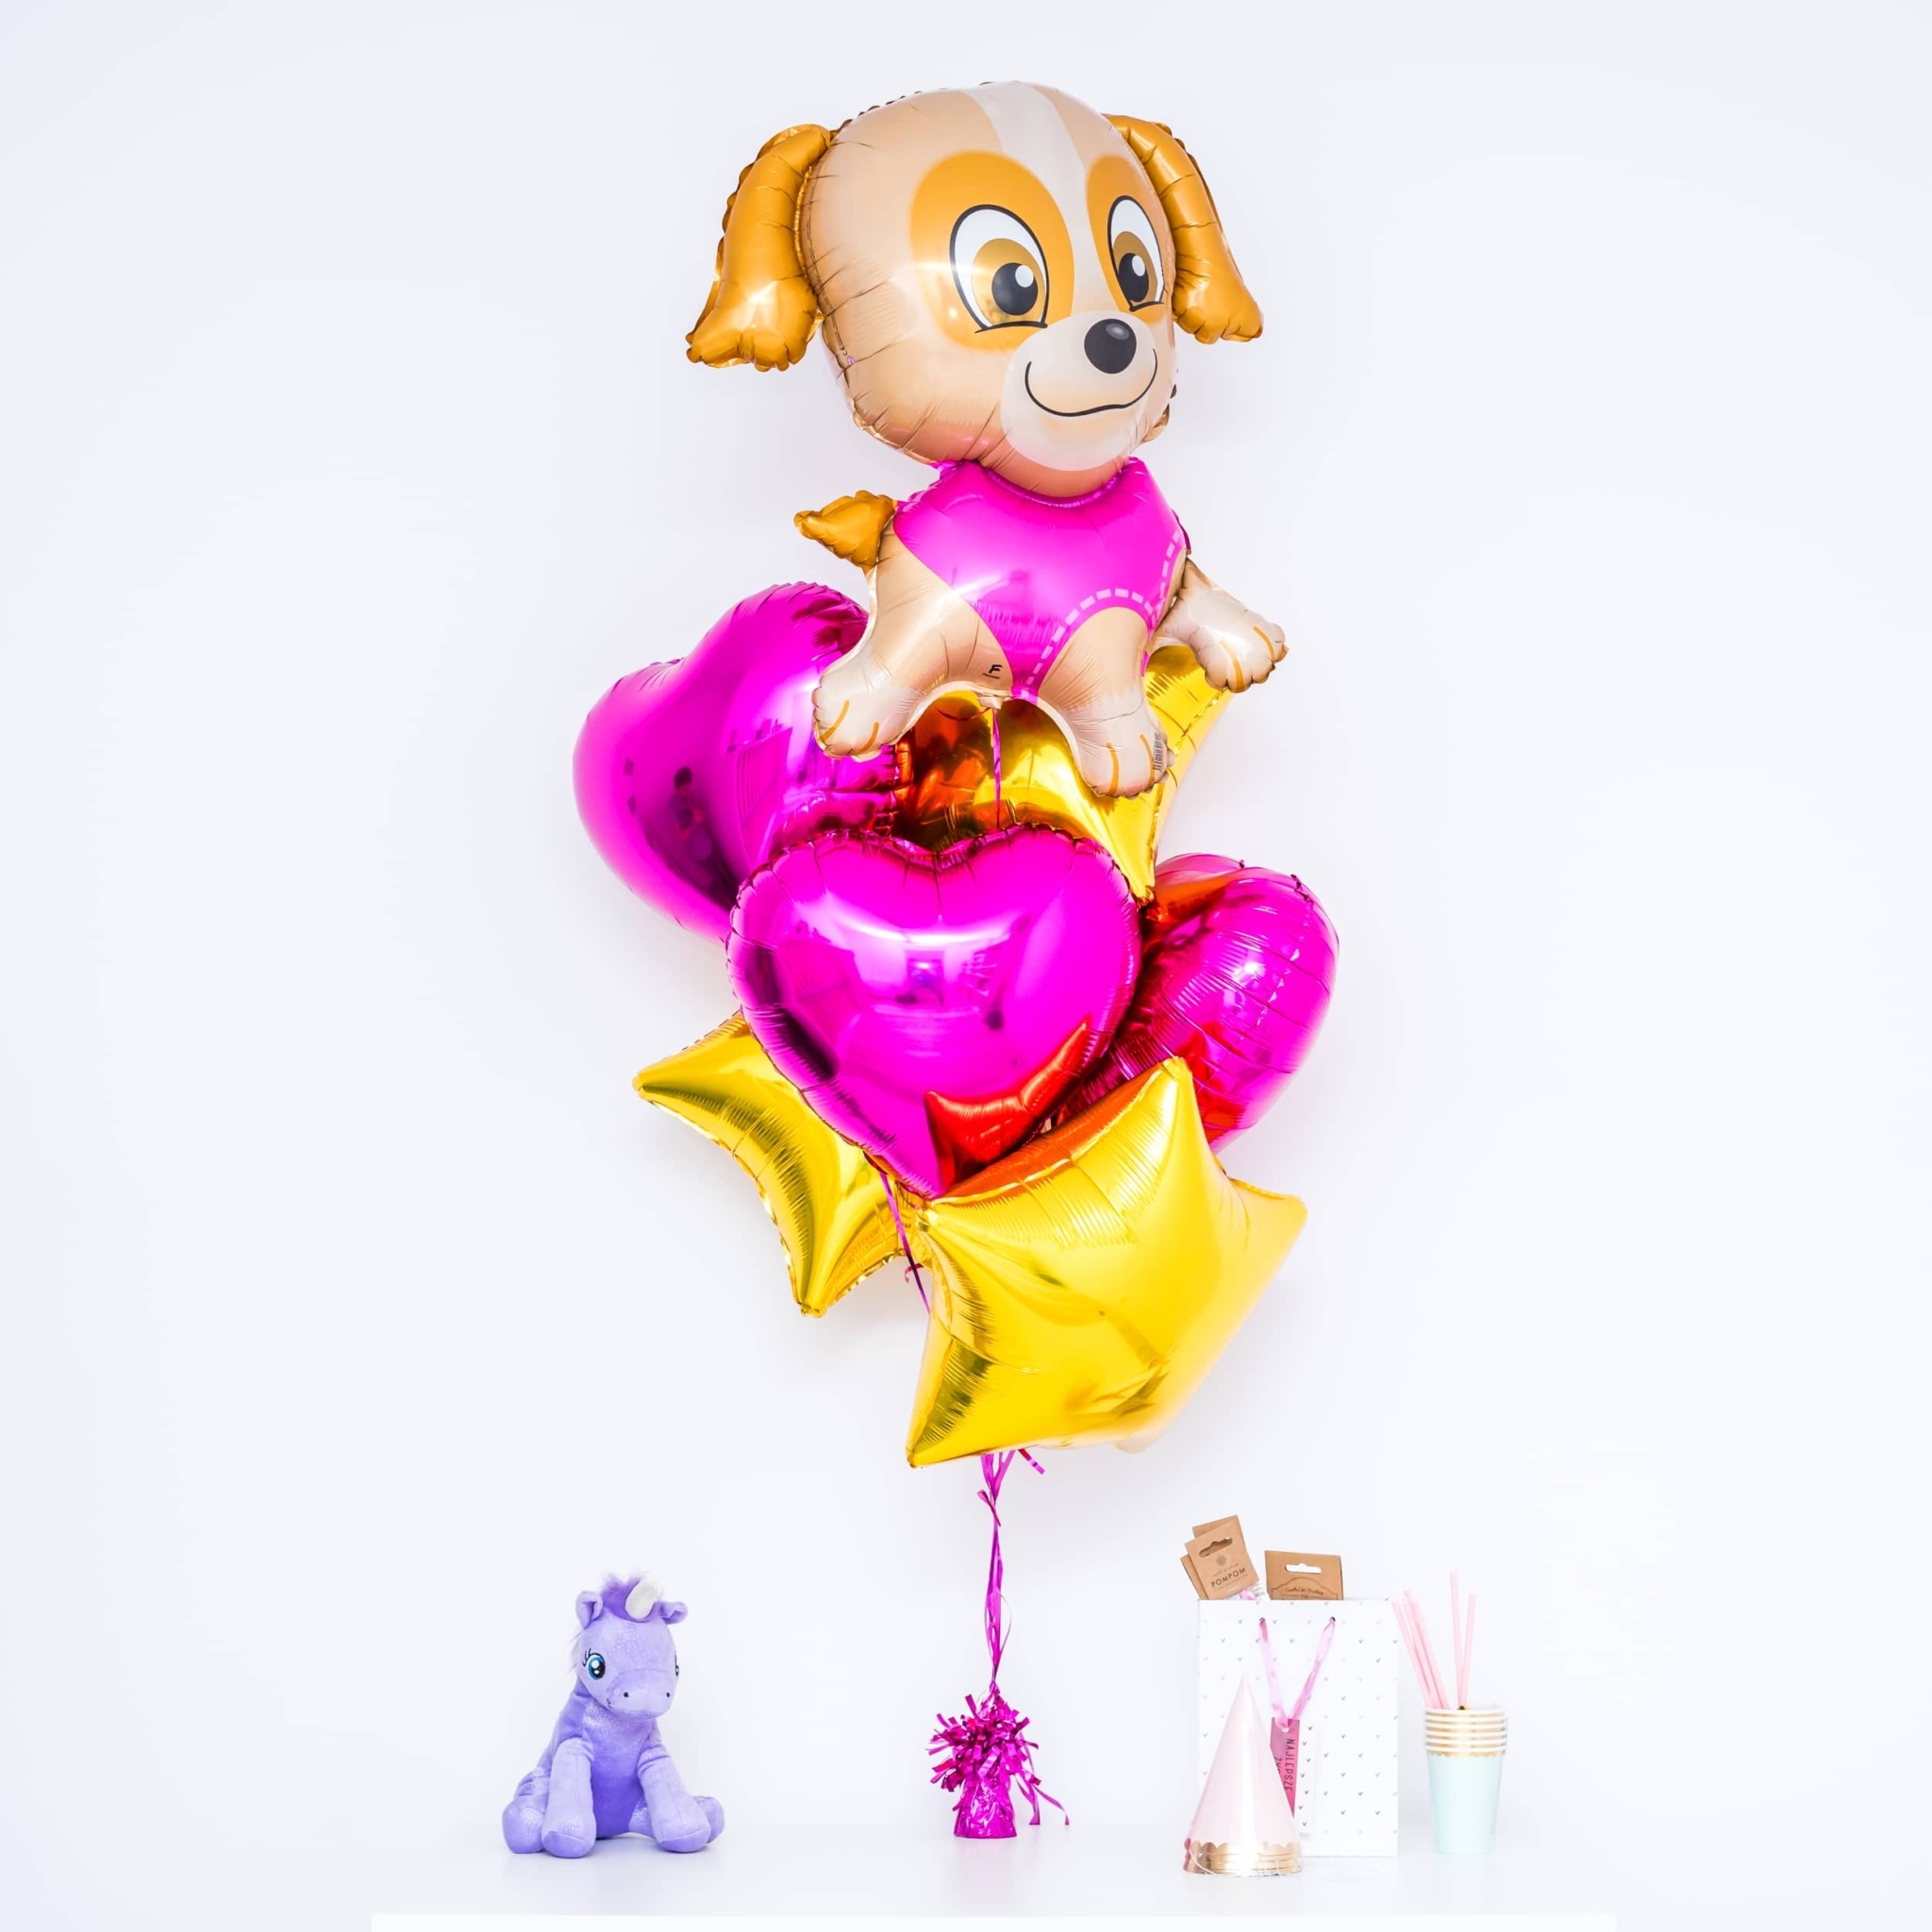 Bukiet balonowy: CUTE DOG, napełniony helem Balony dla Dziecka Szalony.pl - Sklep imprezowy 2